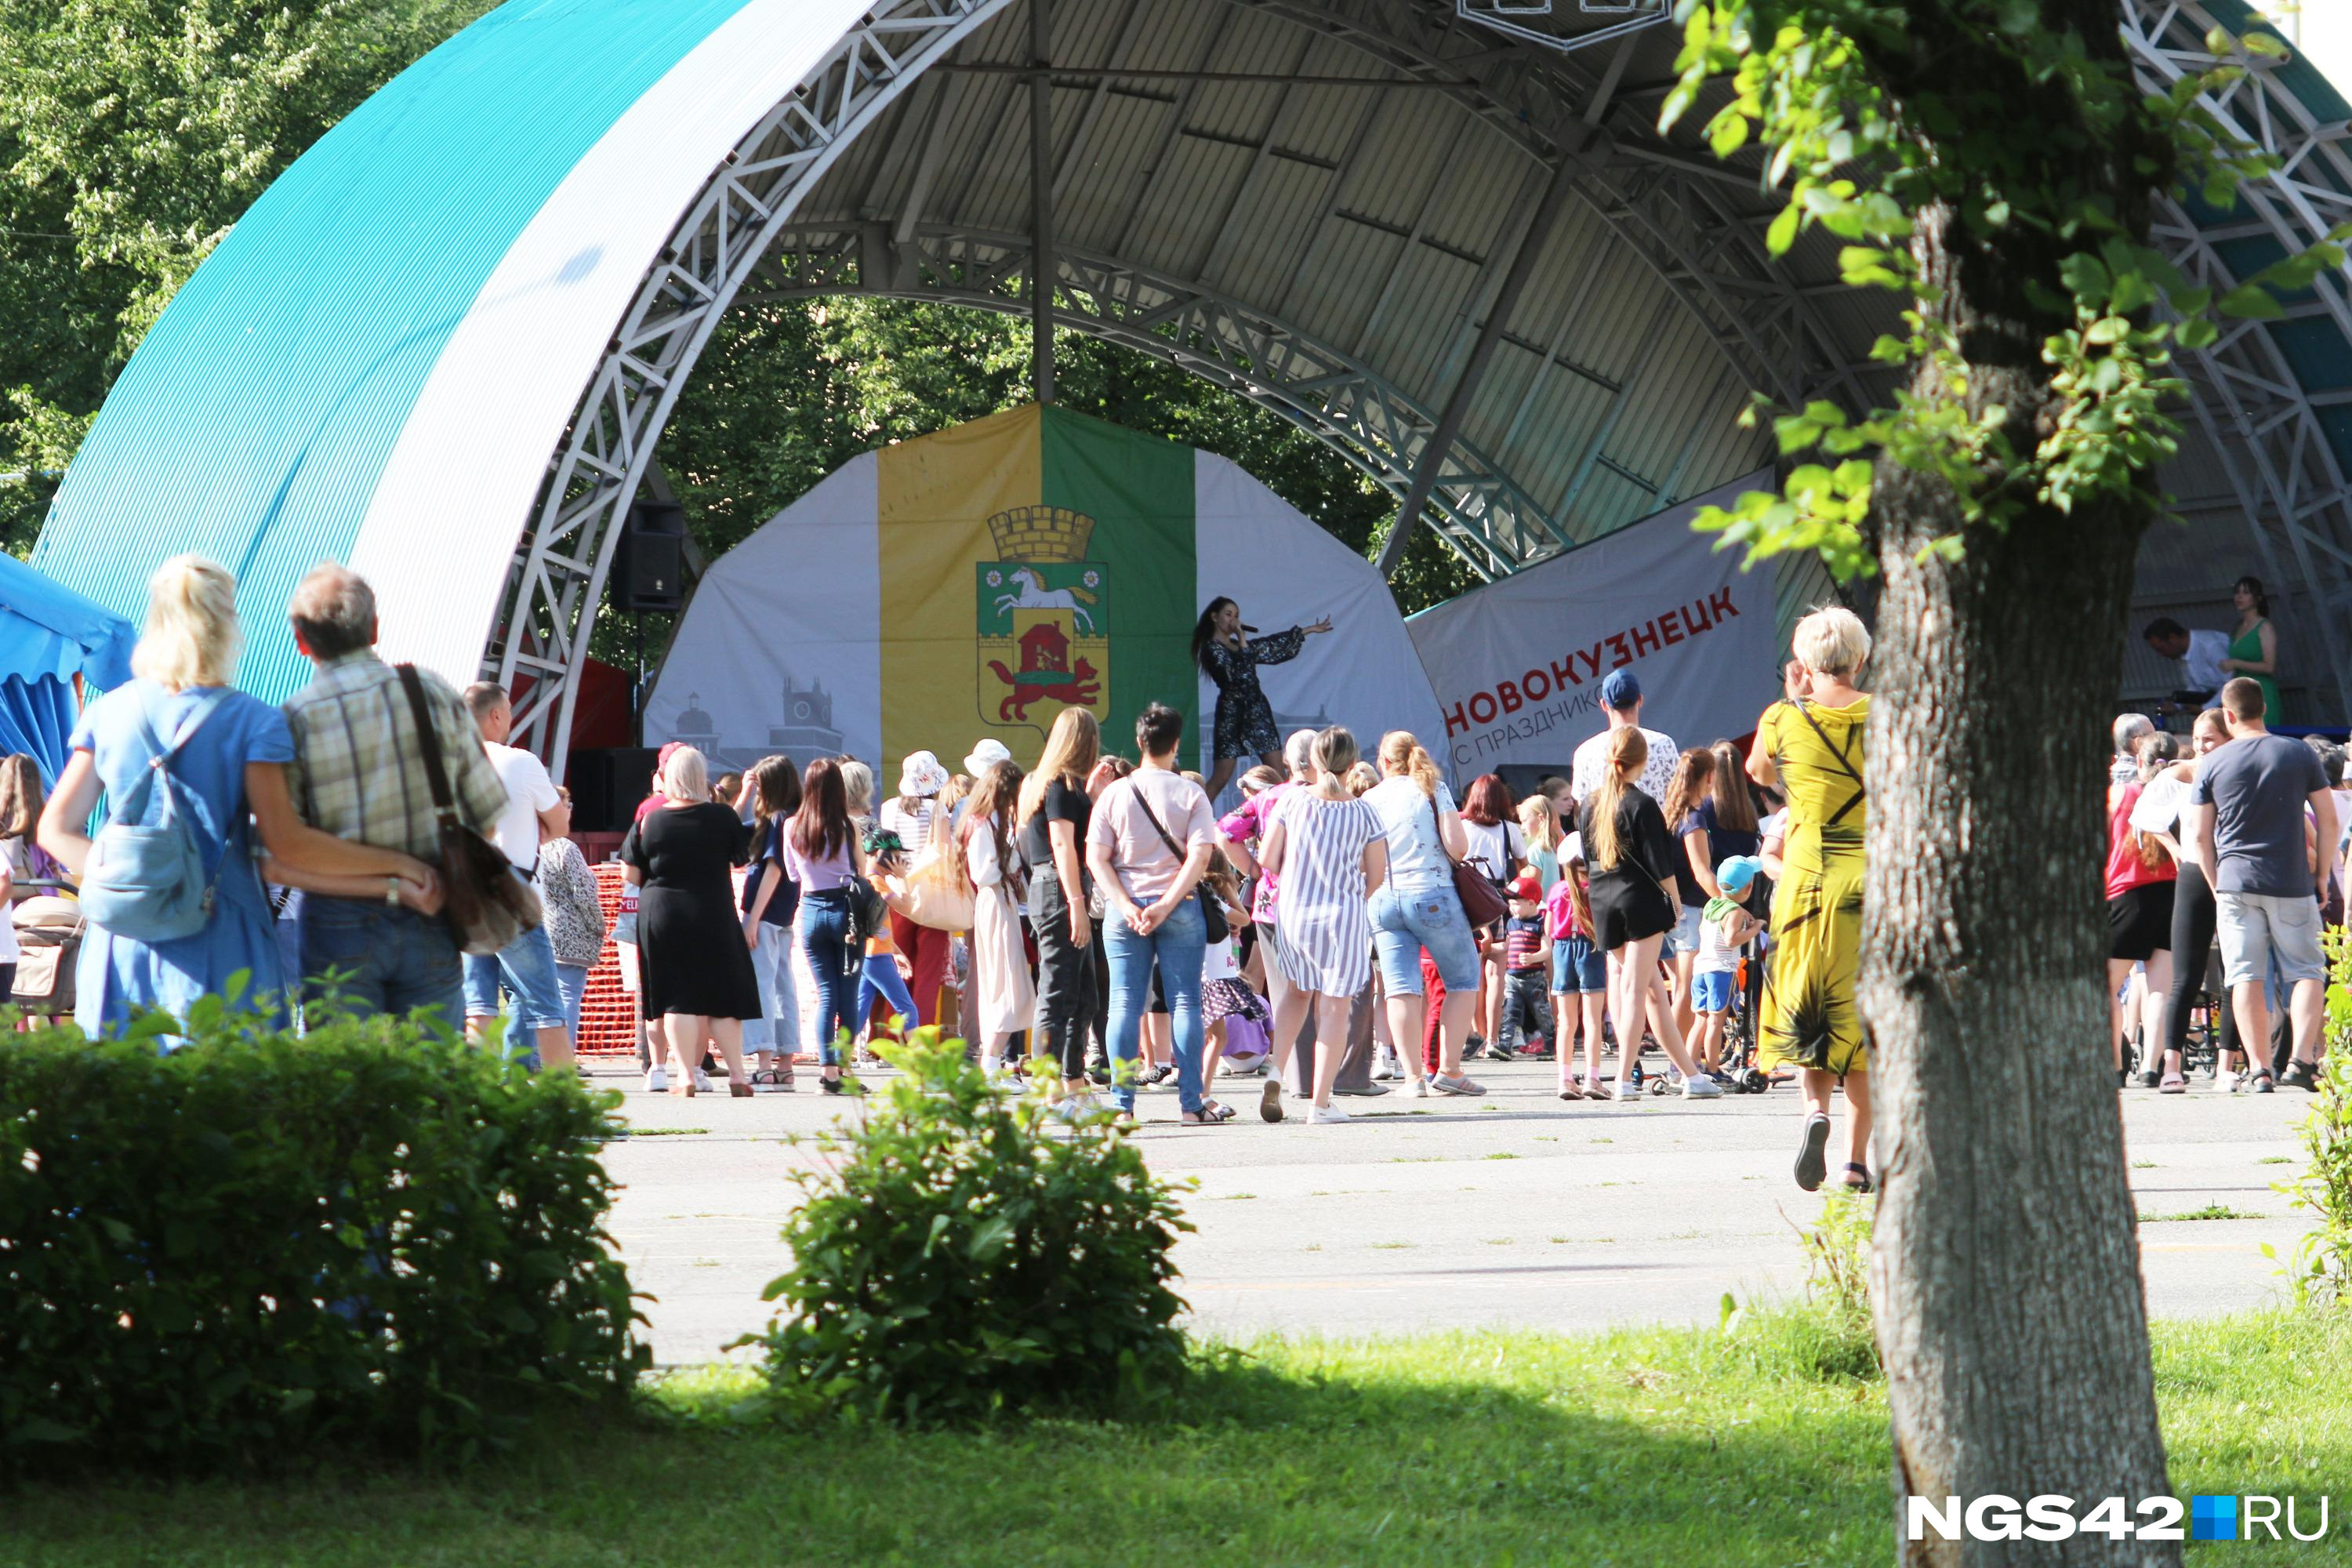 Главные мероприятия – на Ильинке: публикуем полную программу празднования Дня города в Новокузнецке